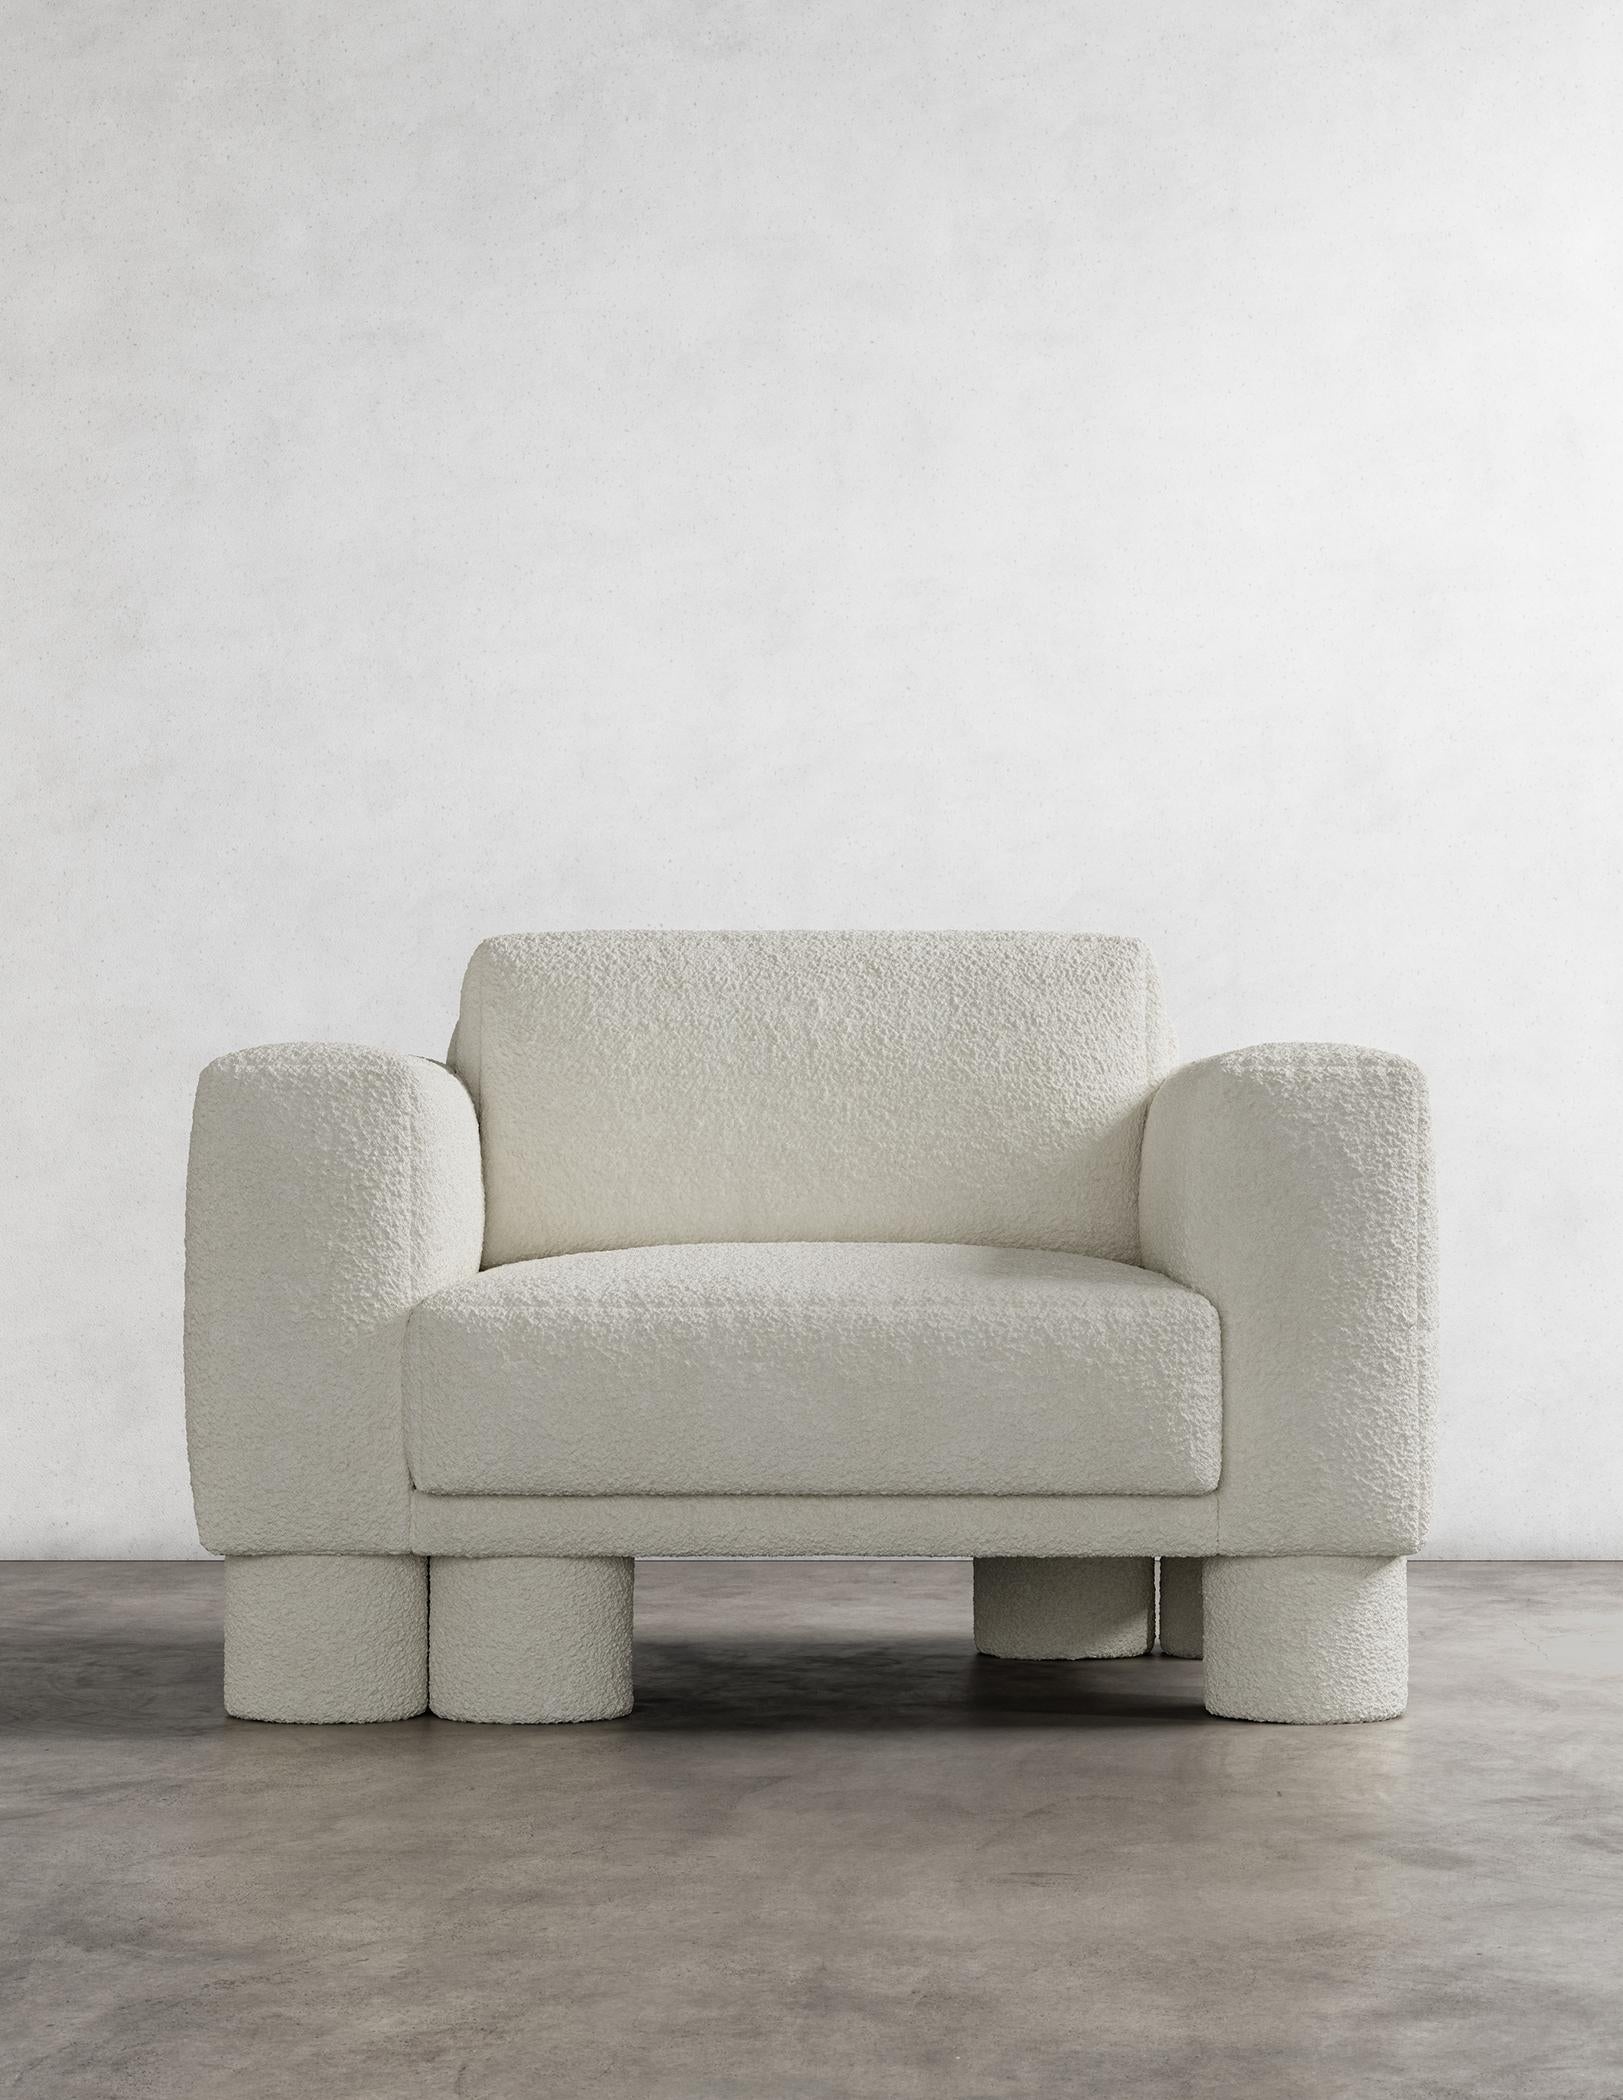 La chaise Pillar est un meuble étonnant au design unique et captivant. Il se caractérise par des éléments de conception superposés et asymétriques qui créent un sentiment de sophistication et de simplicité. Le déséquilibre délibéré de ces éléments